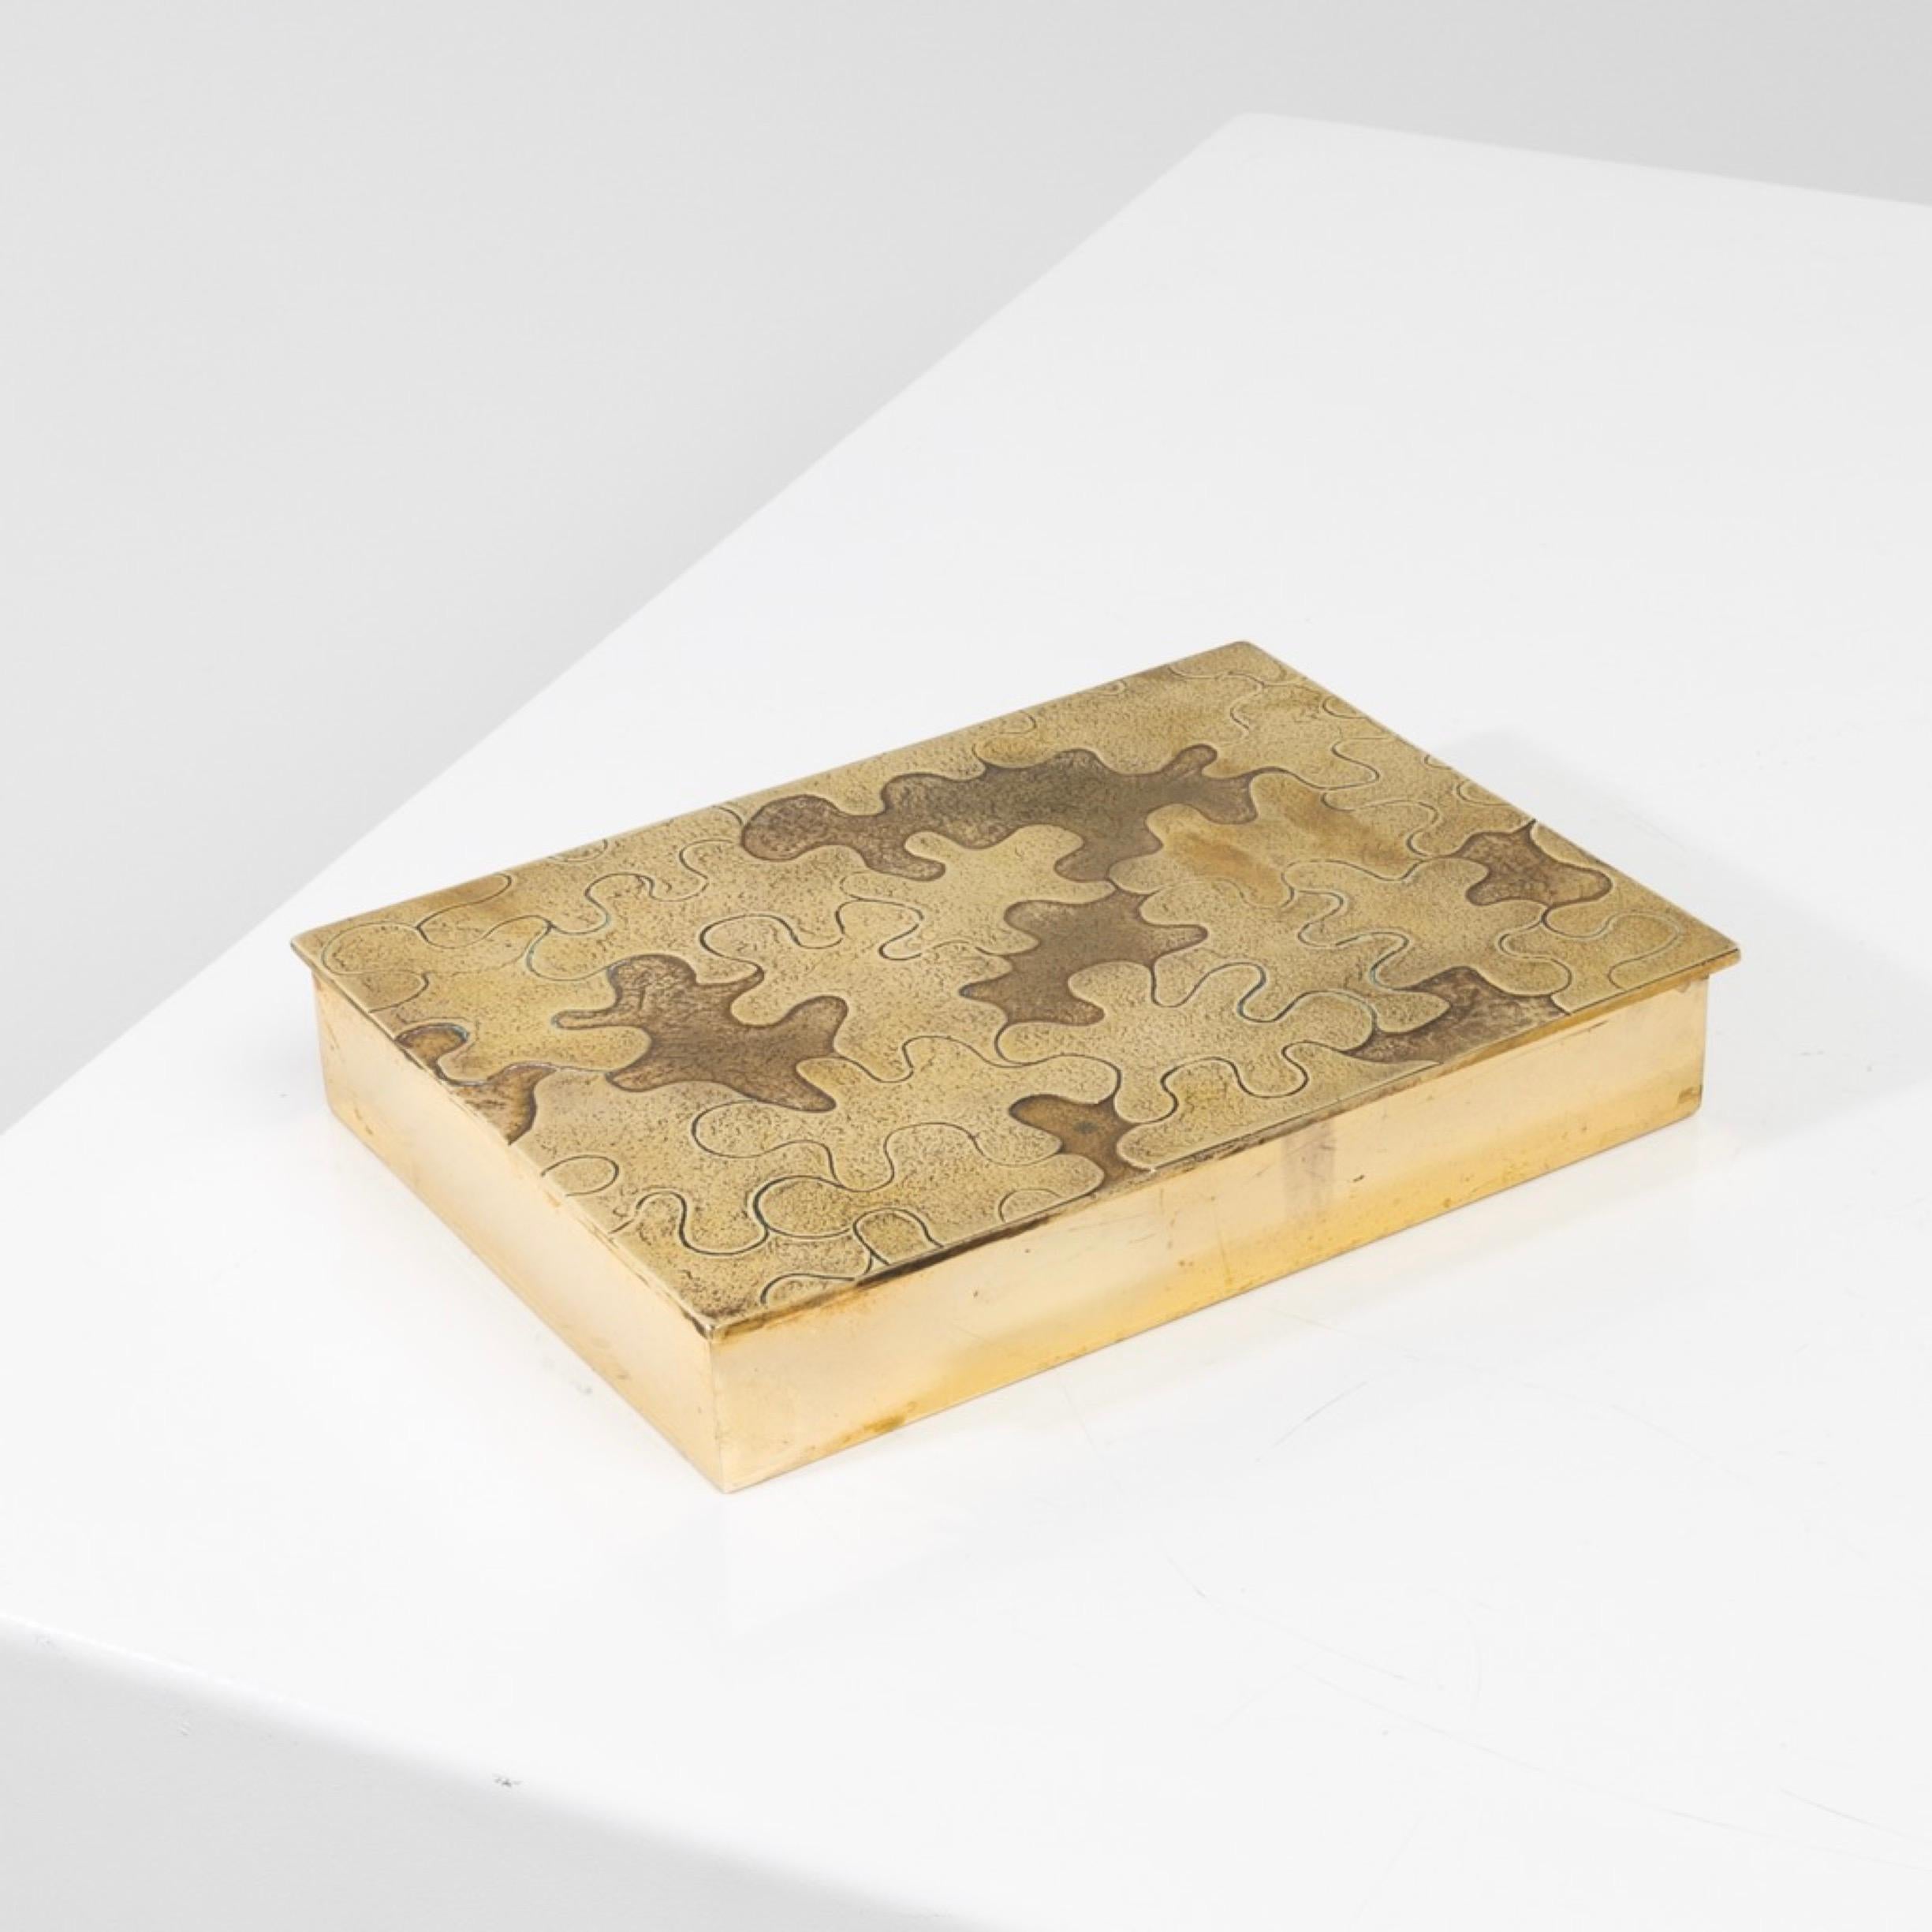 Puzzle de Line Vautrin - Boîte en bronze doré
Grande et large boîte en bronze doré dont le couvercle est sculpté d'un puzzle par Line Vautrin.
Les pièces de puzzle ciselées avec différentes décorations en haut et bas relief.
Un modèle très rare de